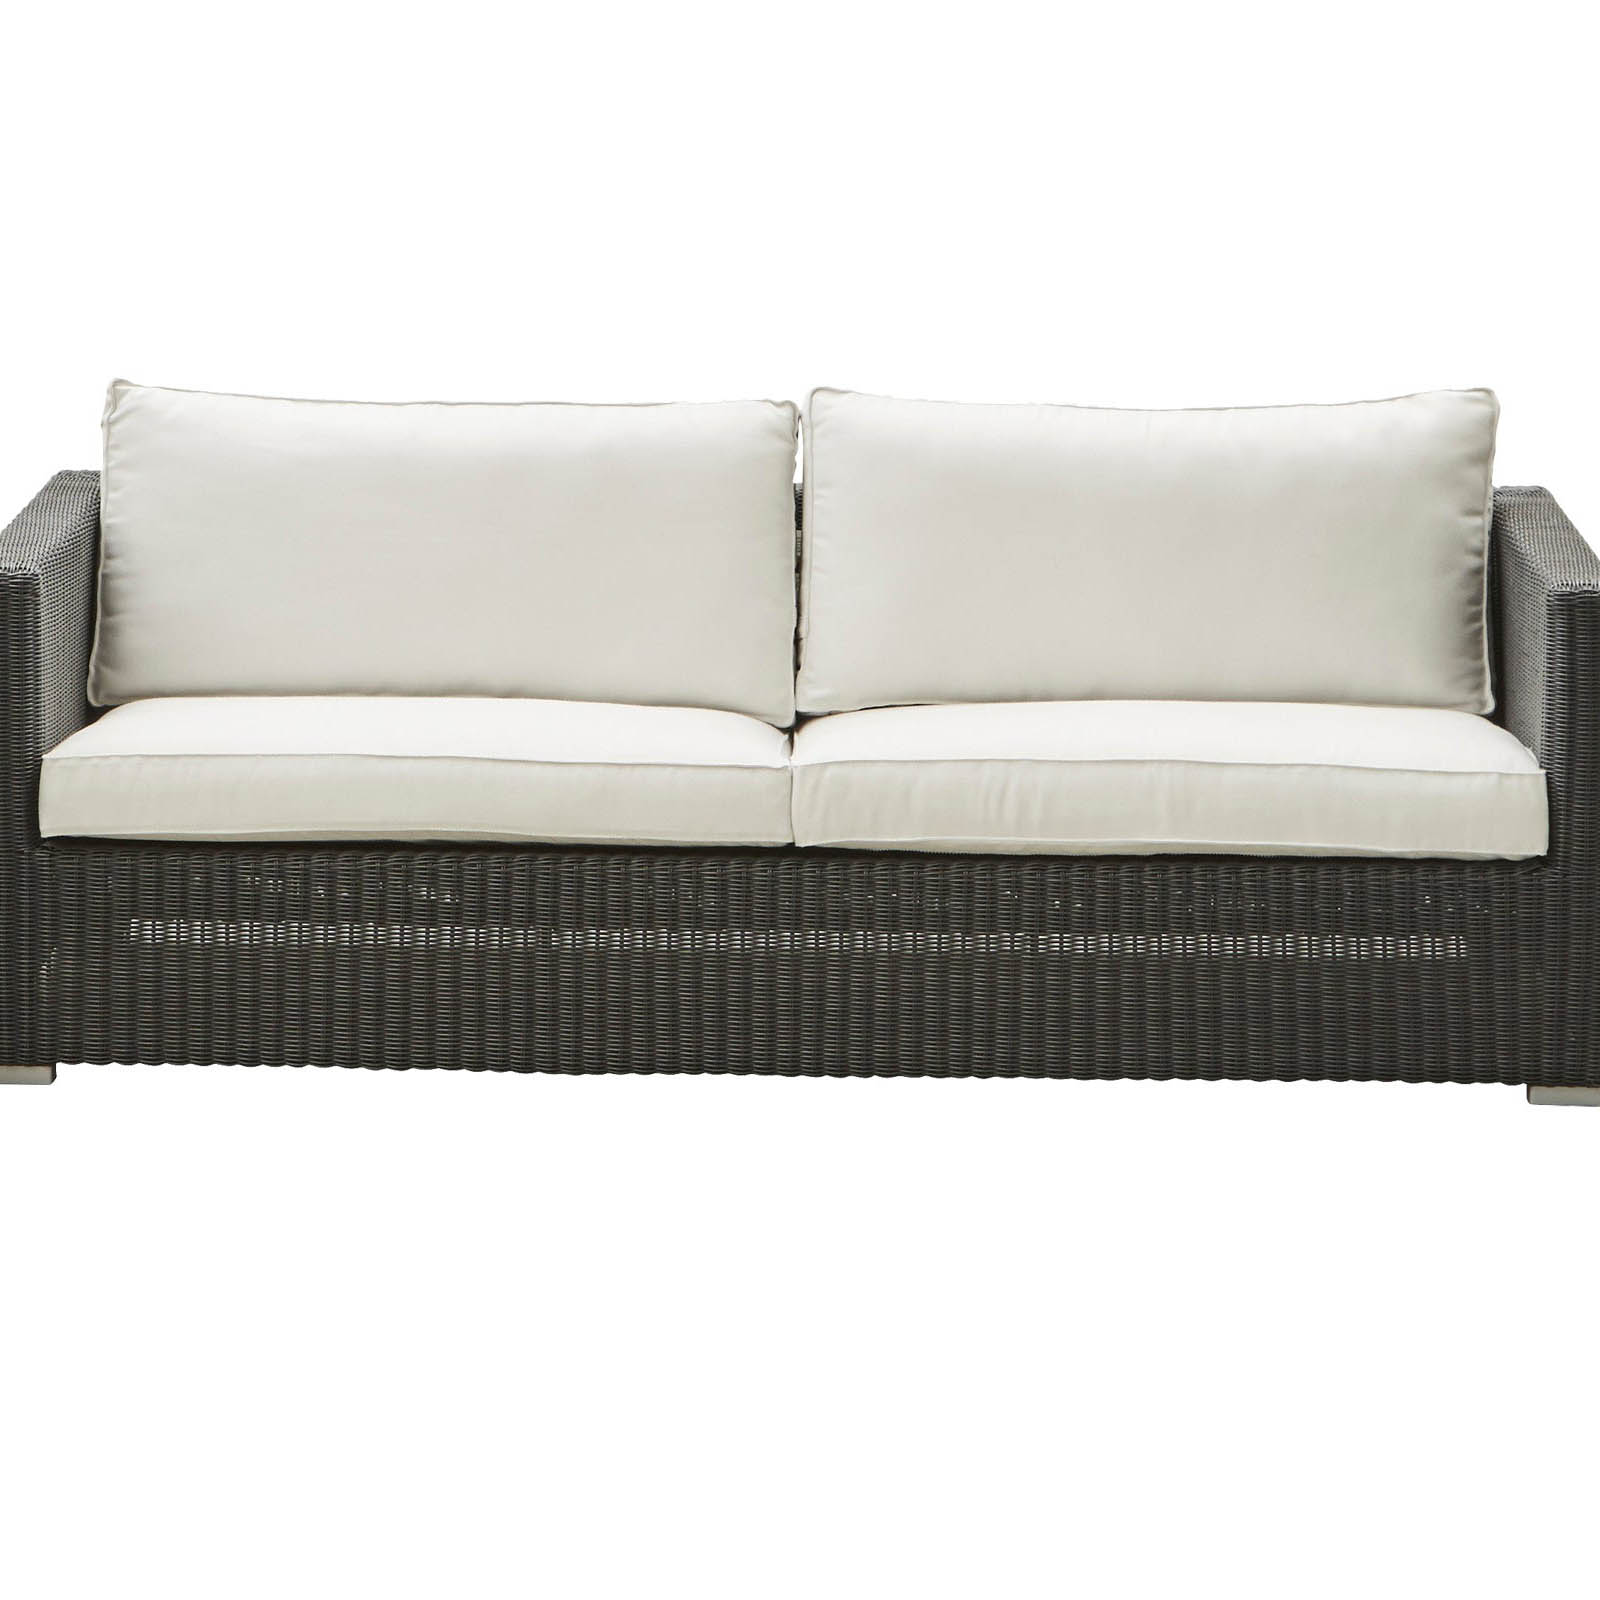 Chester 3-Sitzer Sofa aus Cane-line Weave in Graphite mit Kissen aus Cane-line Natté mit QuickDry in White